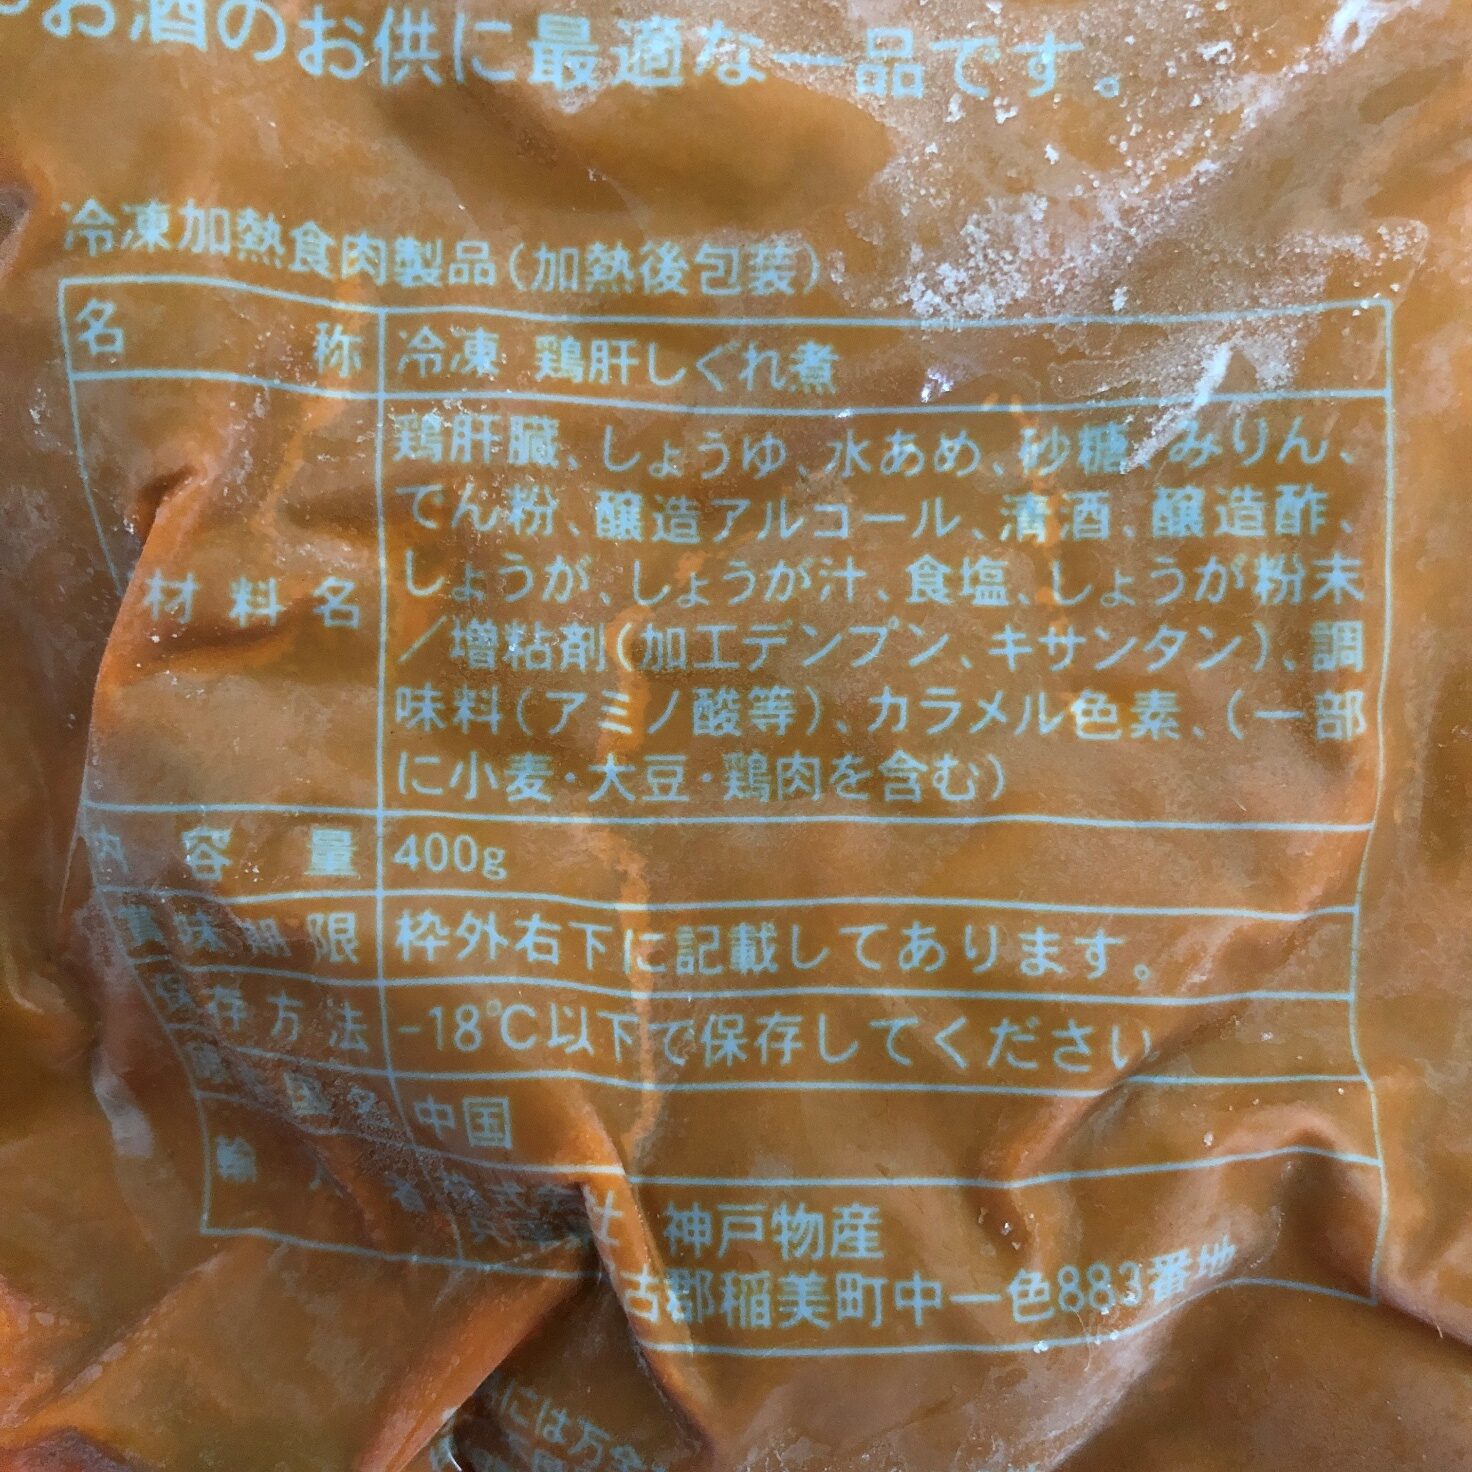 業務スーパーの鶏肝しぐれ煮の原材料名と原産国名の表記